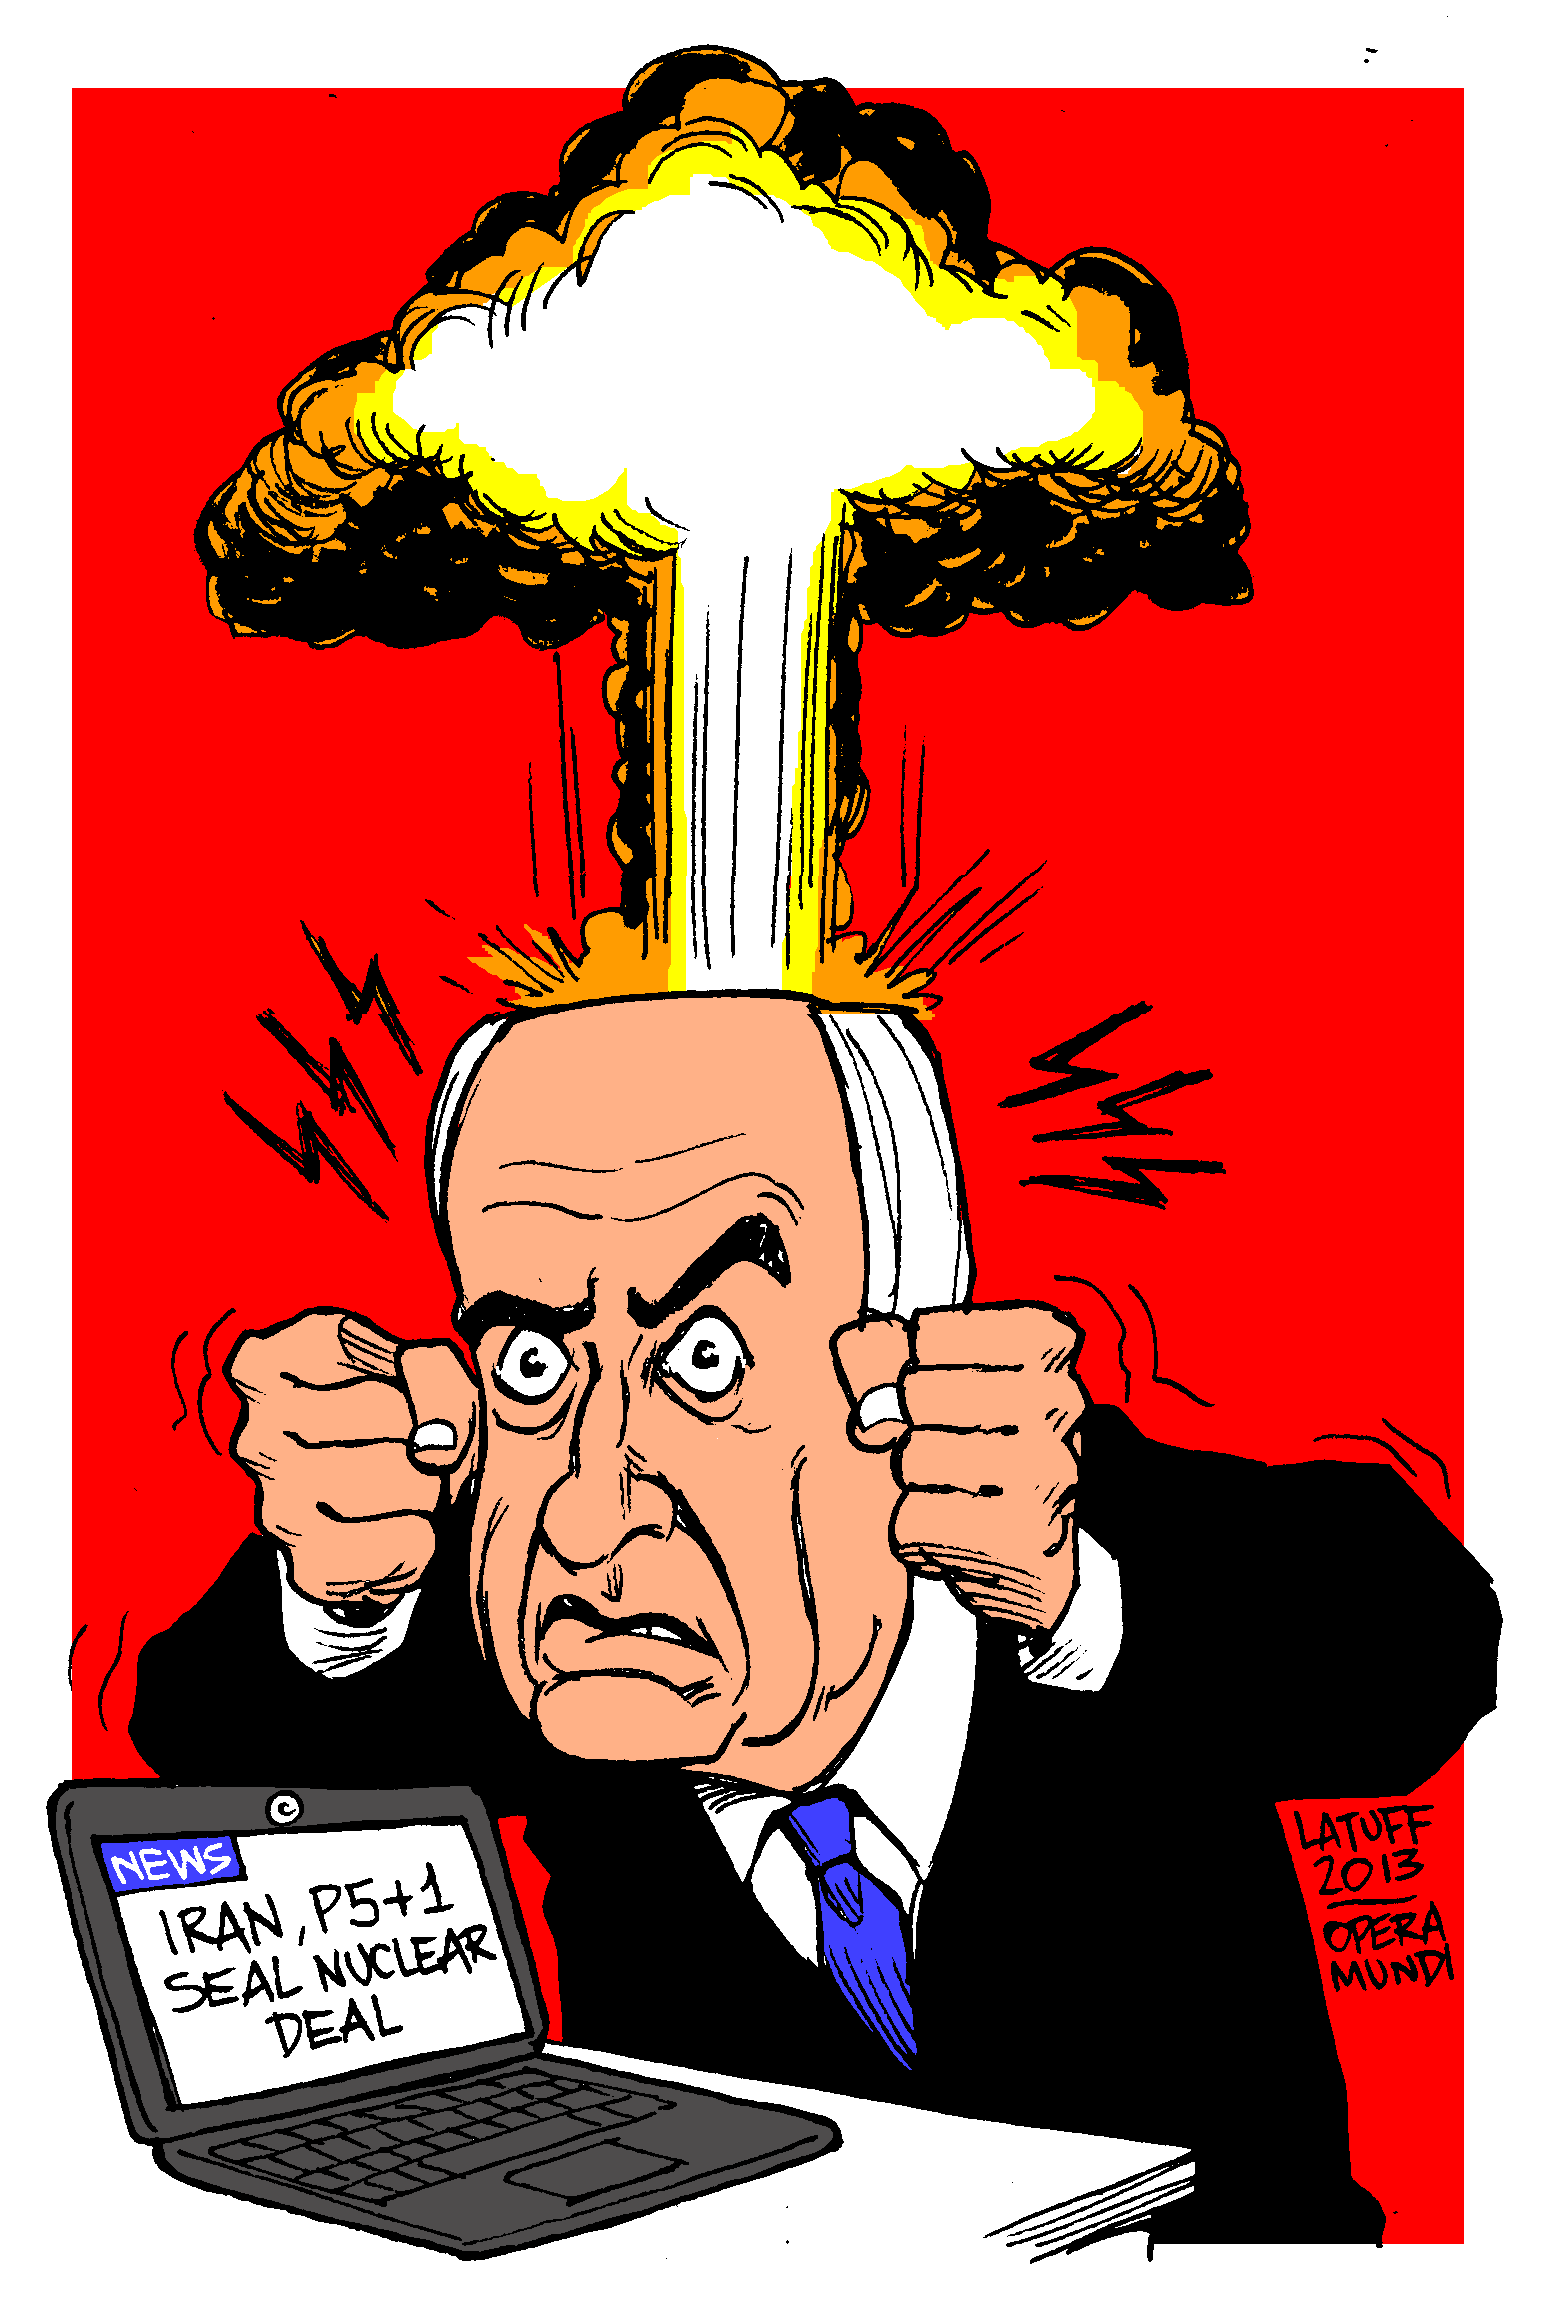 https://latuffcartoons.files.wordpress.com/2013/11/netanyahu-iran-p51-nuclear-deal.gif